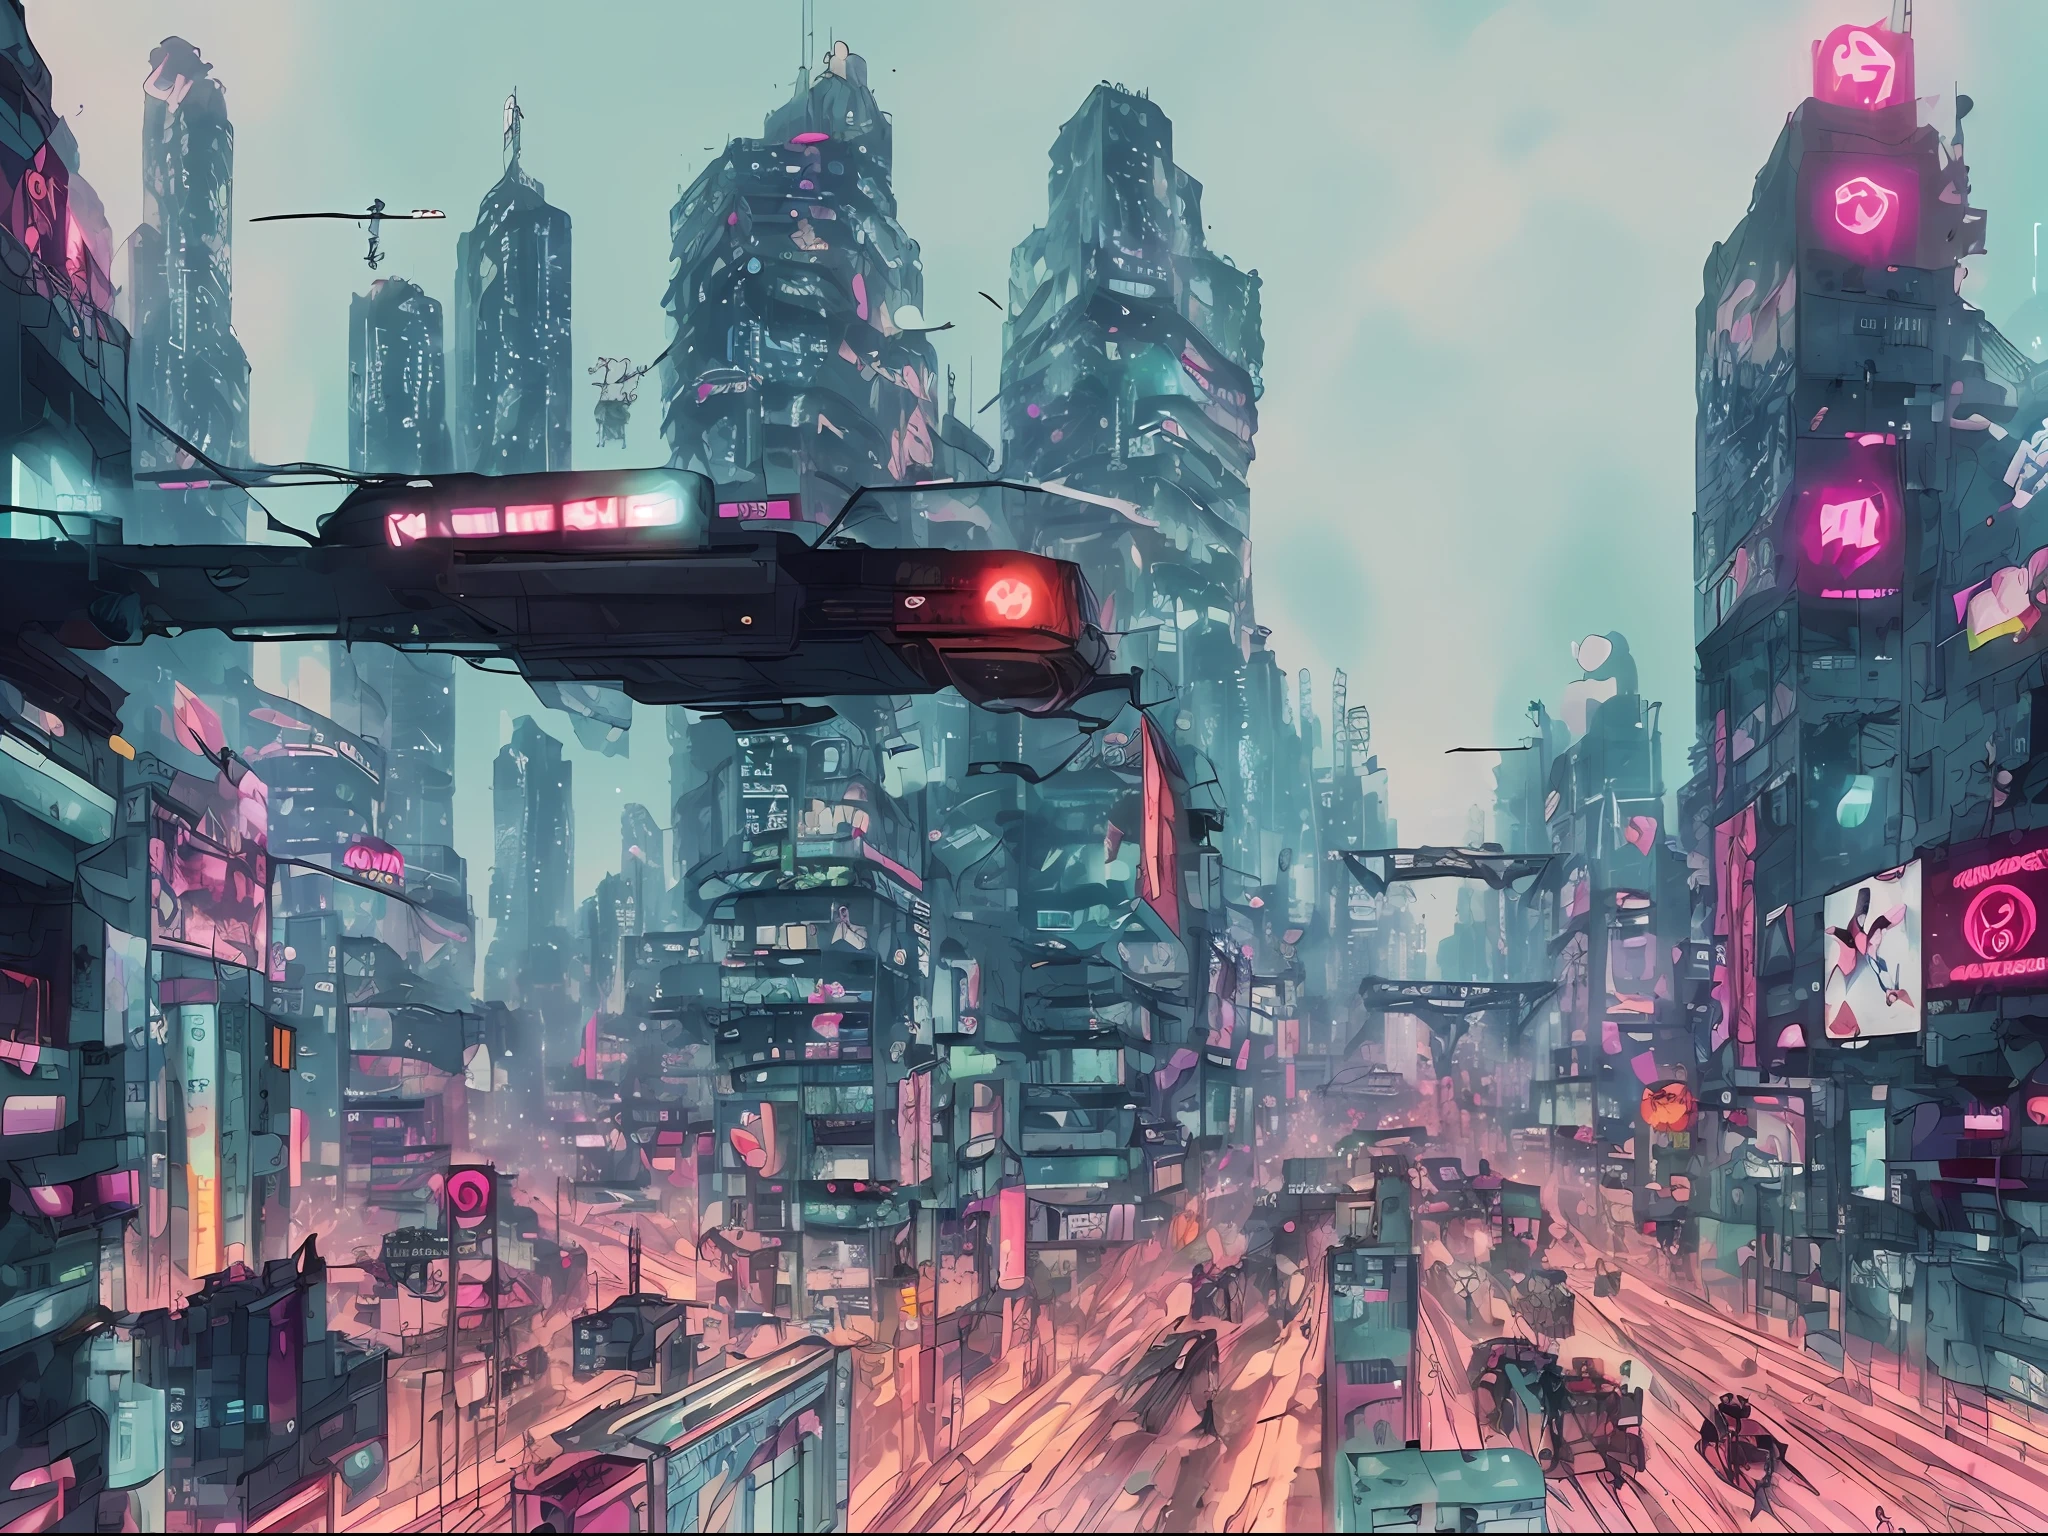 (Meisterwerk), (Die beste Qualität), (Ultra detailliert), (Illustration), (Tarot), (cyberpunk), (Anlage), (Schön) - V6 Bild einer Anime-Stadt namens Alita Combat Angel, die von einem riesigen roten Roboter angegriffen wird, während die Bürger gespannt zuschauen.